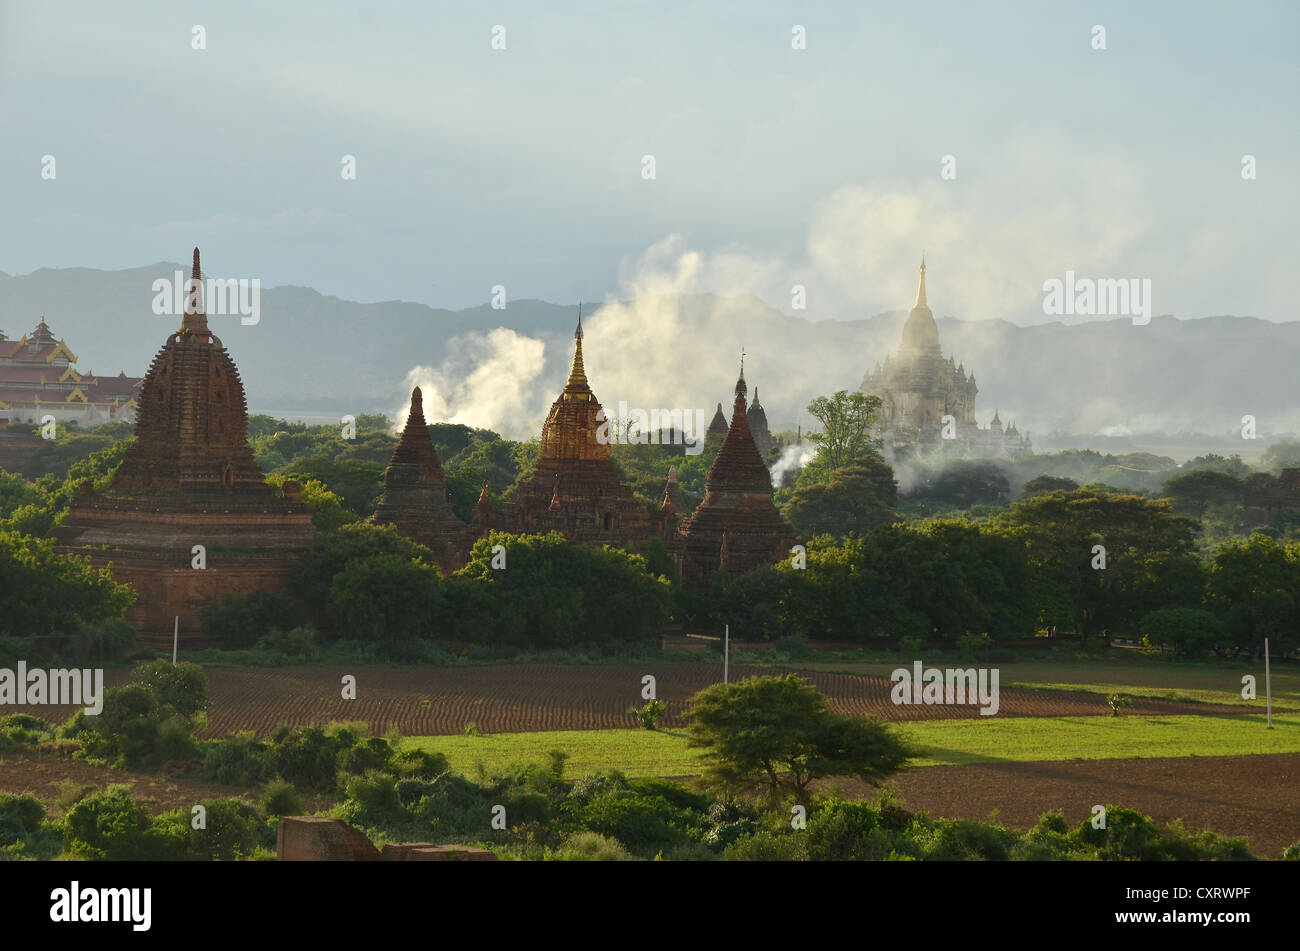 Fumo, nebbia nella luce della sera tra i campi, templi e pagode, Tempio di Ananda e Thatbyinnyu Temple, Bagan, Myanmar Foto Stock